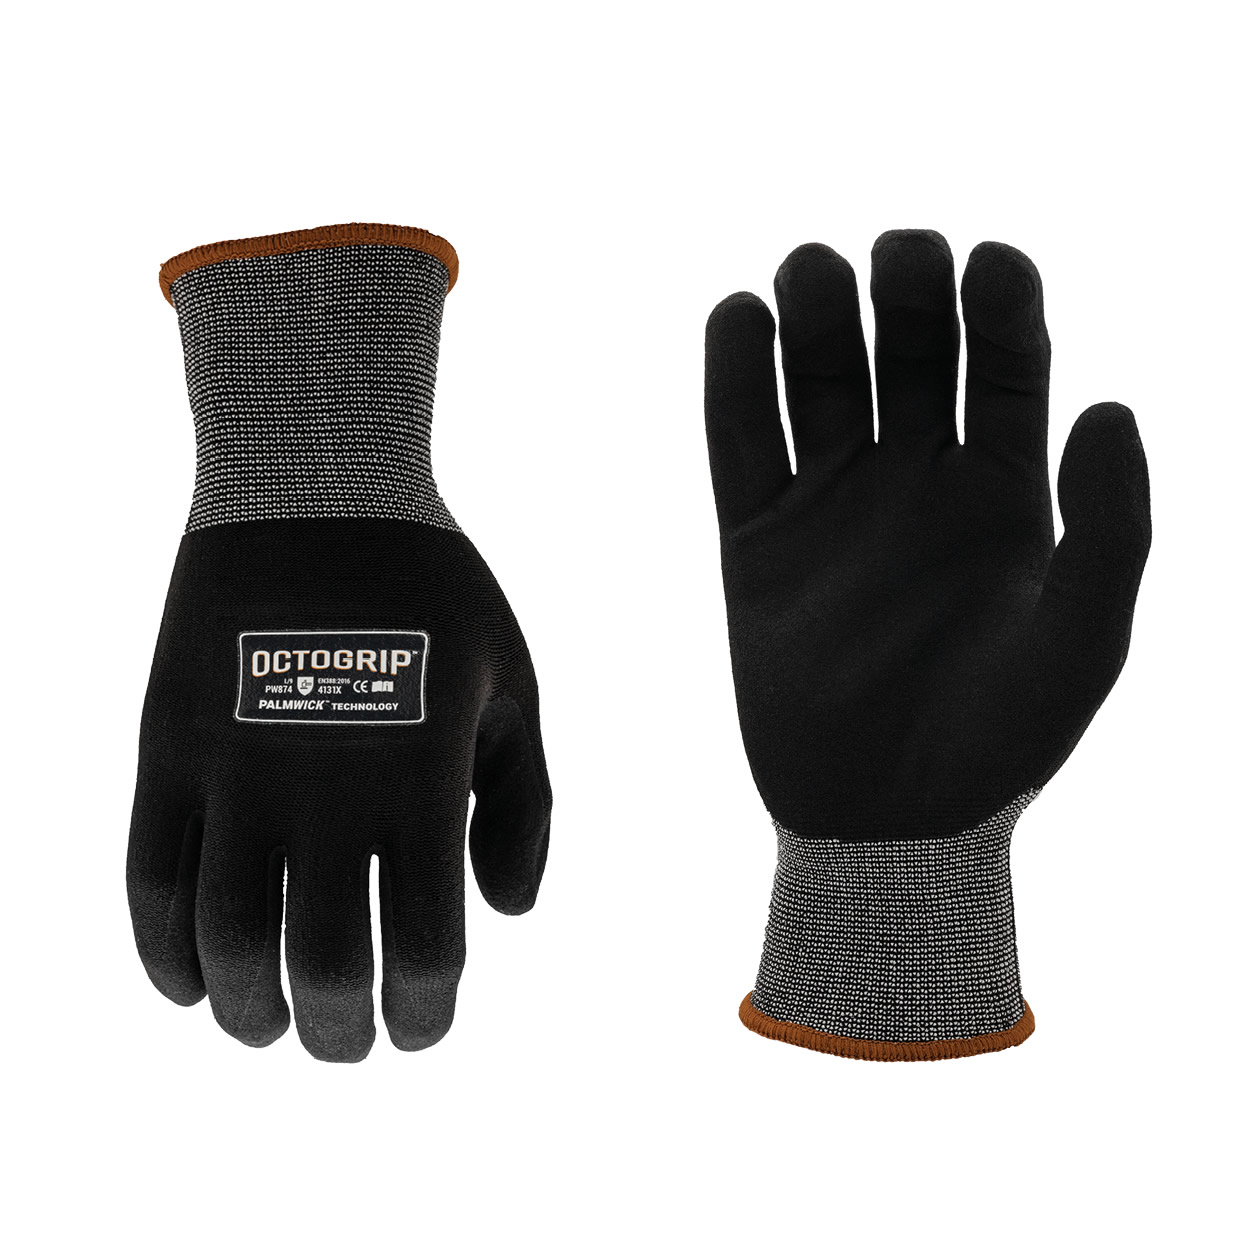 Octogrip PW874XL Breathable 15g Nylon Lycra Glove (XL)